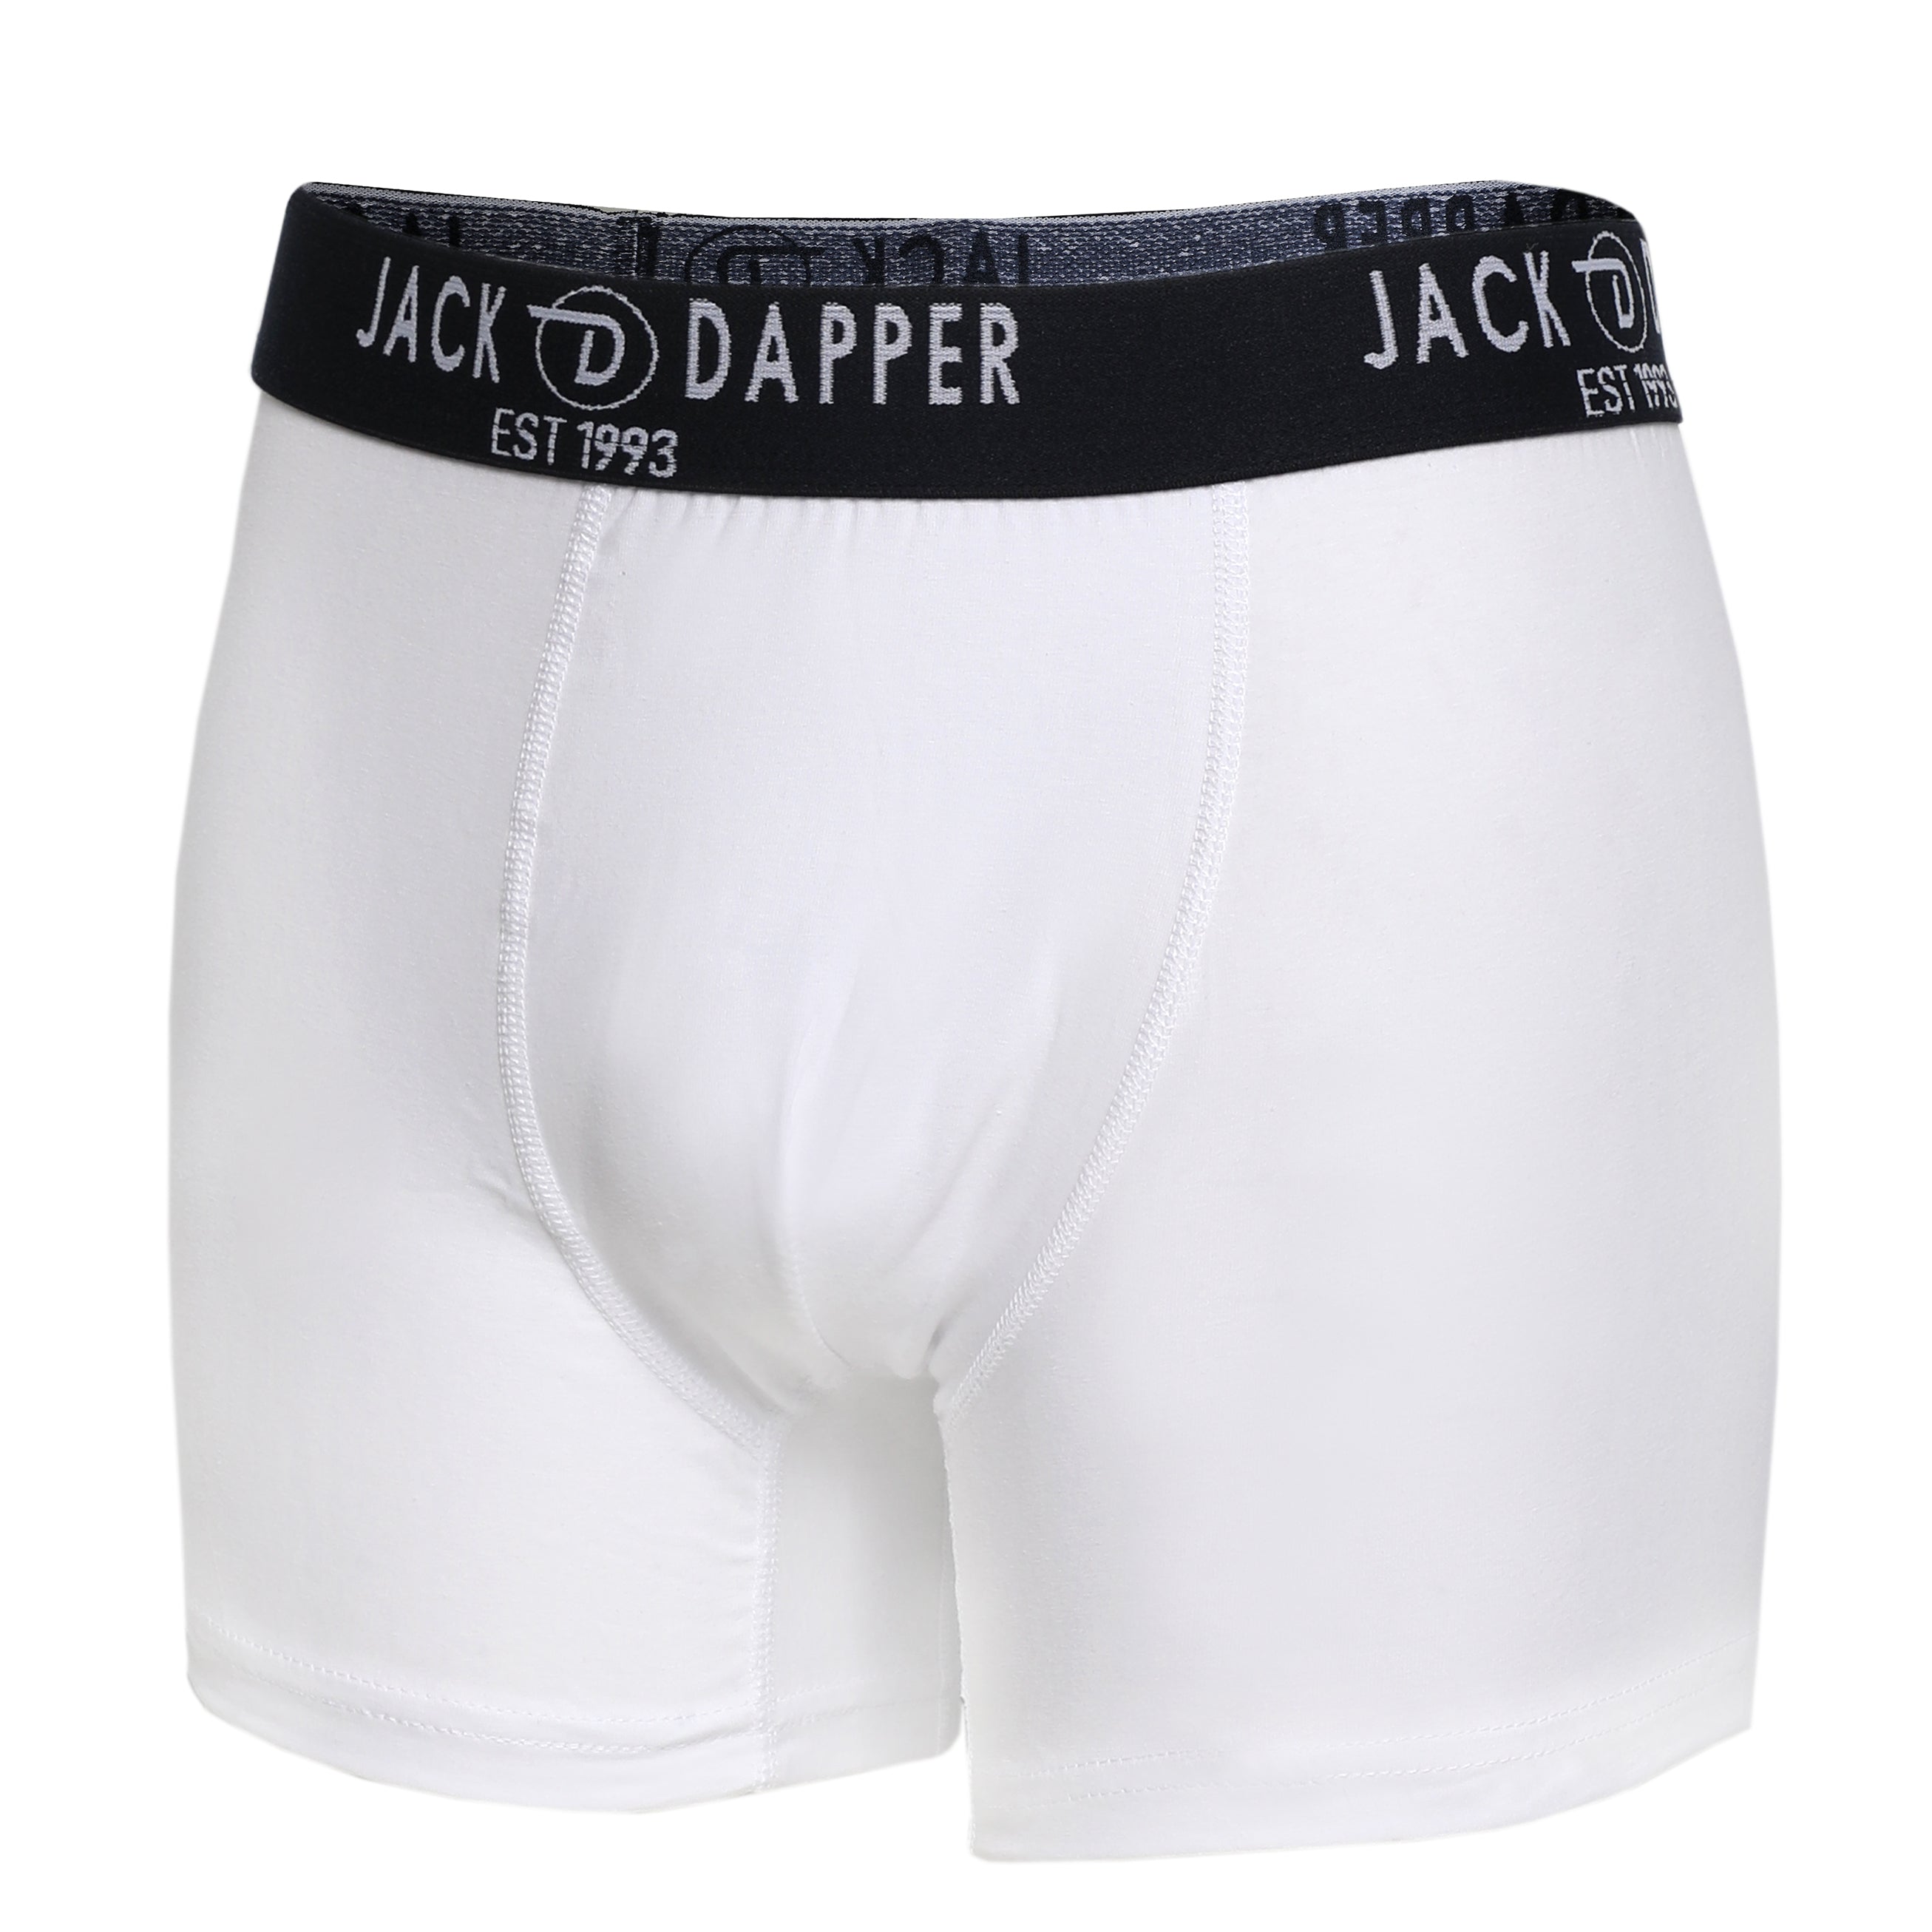 Jack Dapper White 2-Piece Cotton Underwear